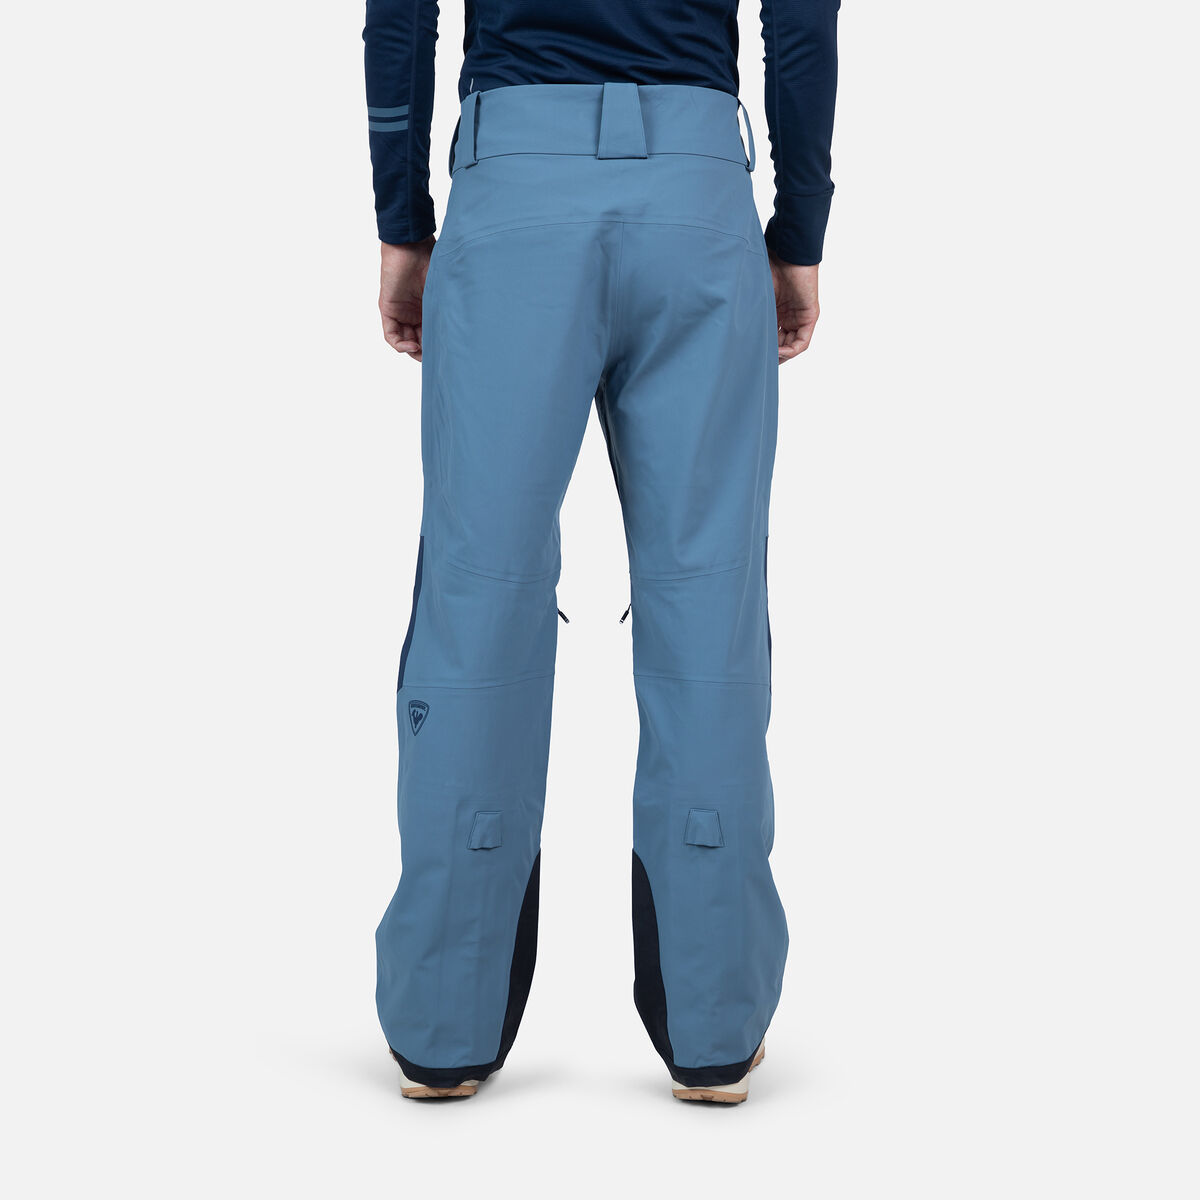 Rossignol Men's Evader Ski Pants Blue